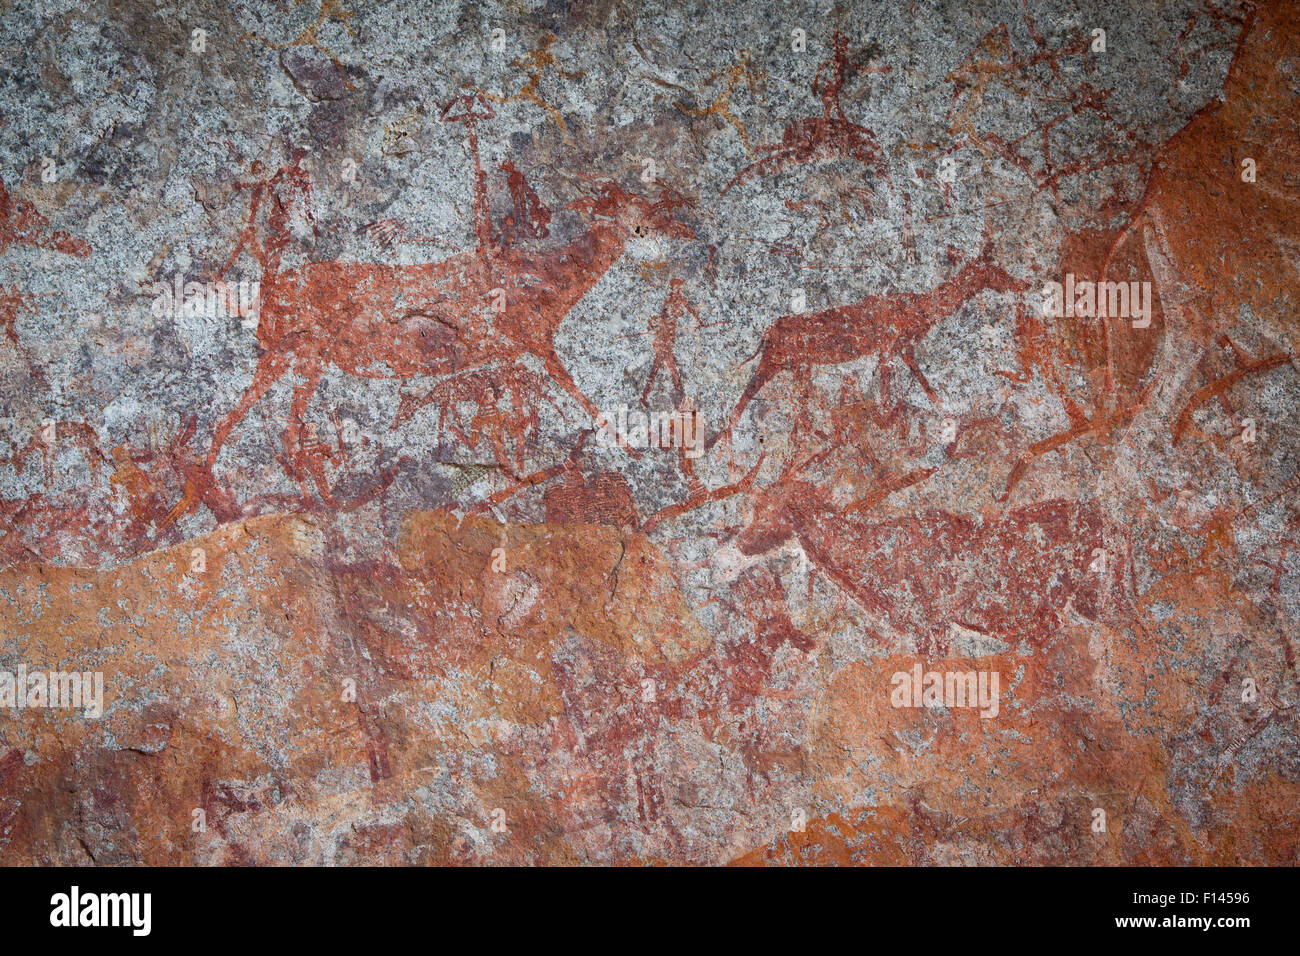 Menschliche Figuren und Tiere dargestellt in San Buschmann Felszeichnungen, schätzungsweise rund 2000 Jahre alt, Nswatugi Höhle, Matobo National Park, Simbabwe, November 2011. Stockfoto